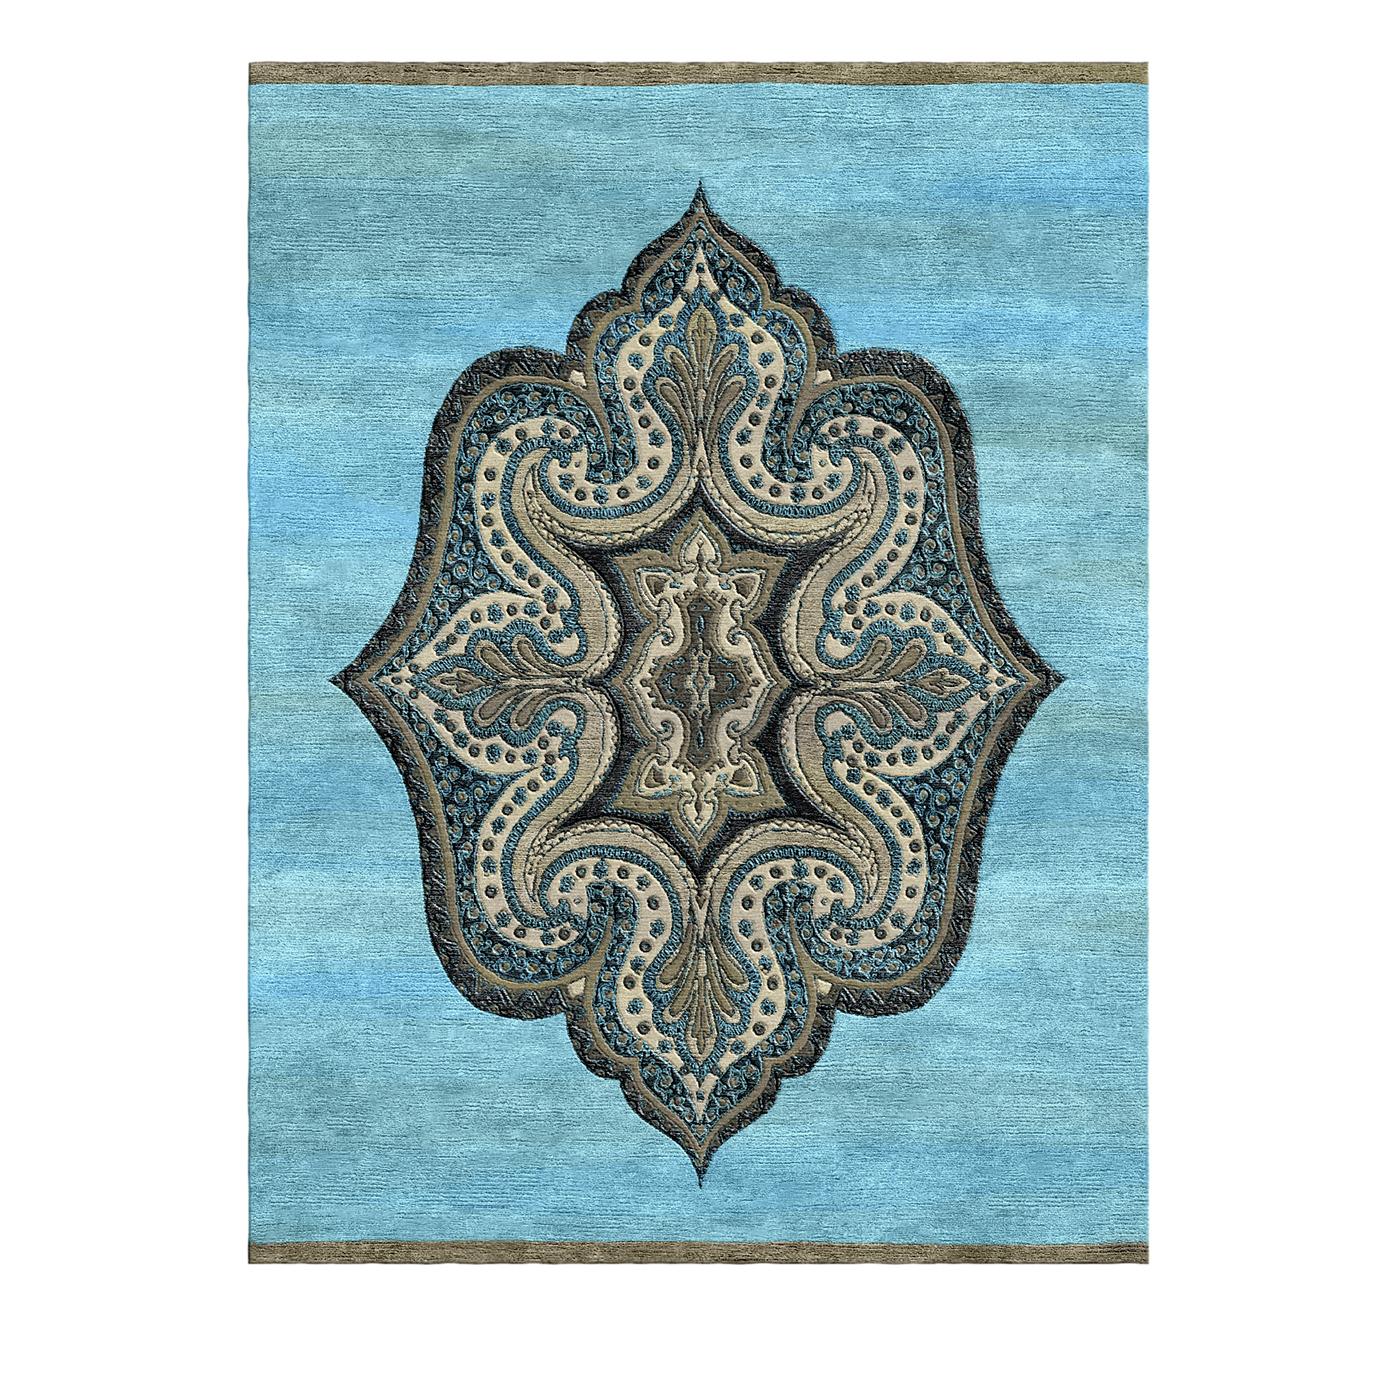 Dieser außergewöhnliche Teppich wird in Indien mit tibetischen Knüpftechniken handgefertigt. Das Mandala-Muster ist von einem Kaleidoskop inspiriert und zeichnet sich durch seine kunstvollen Schnecken- und Wedelmotive aus. Der arktisch-blaue